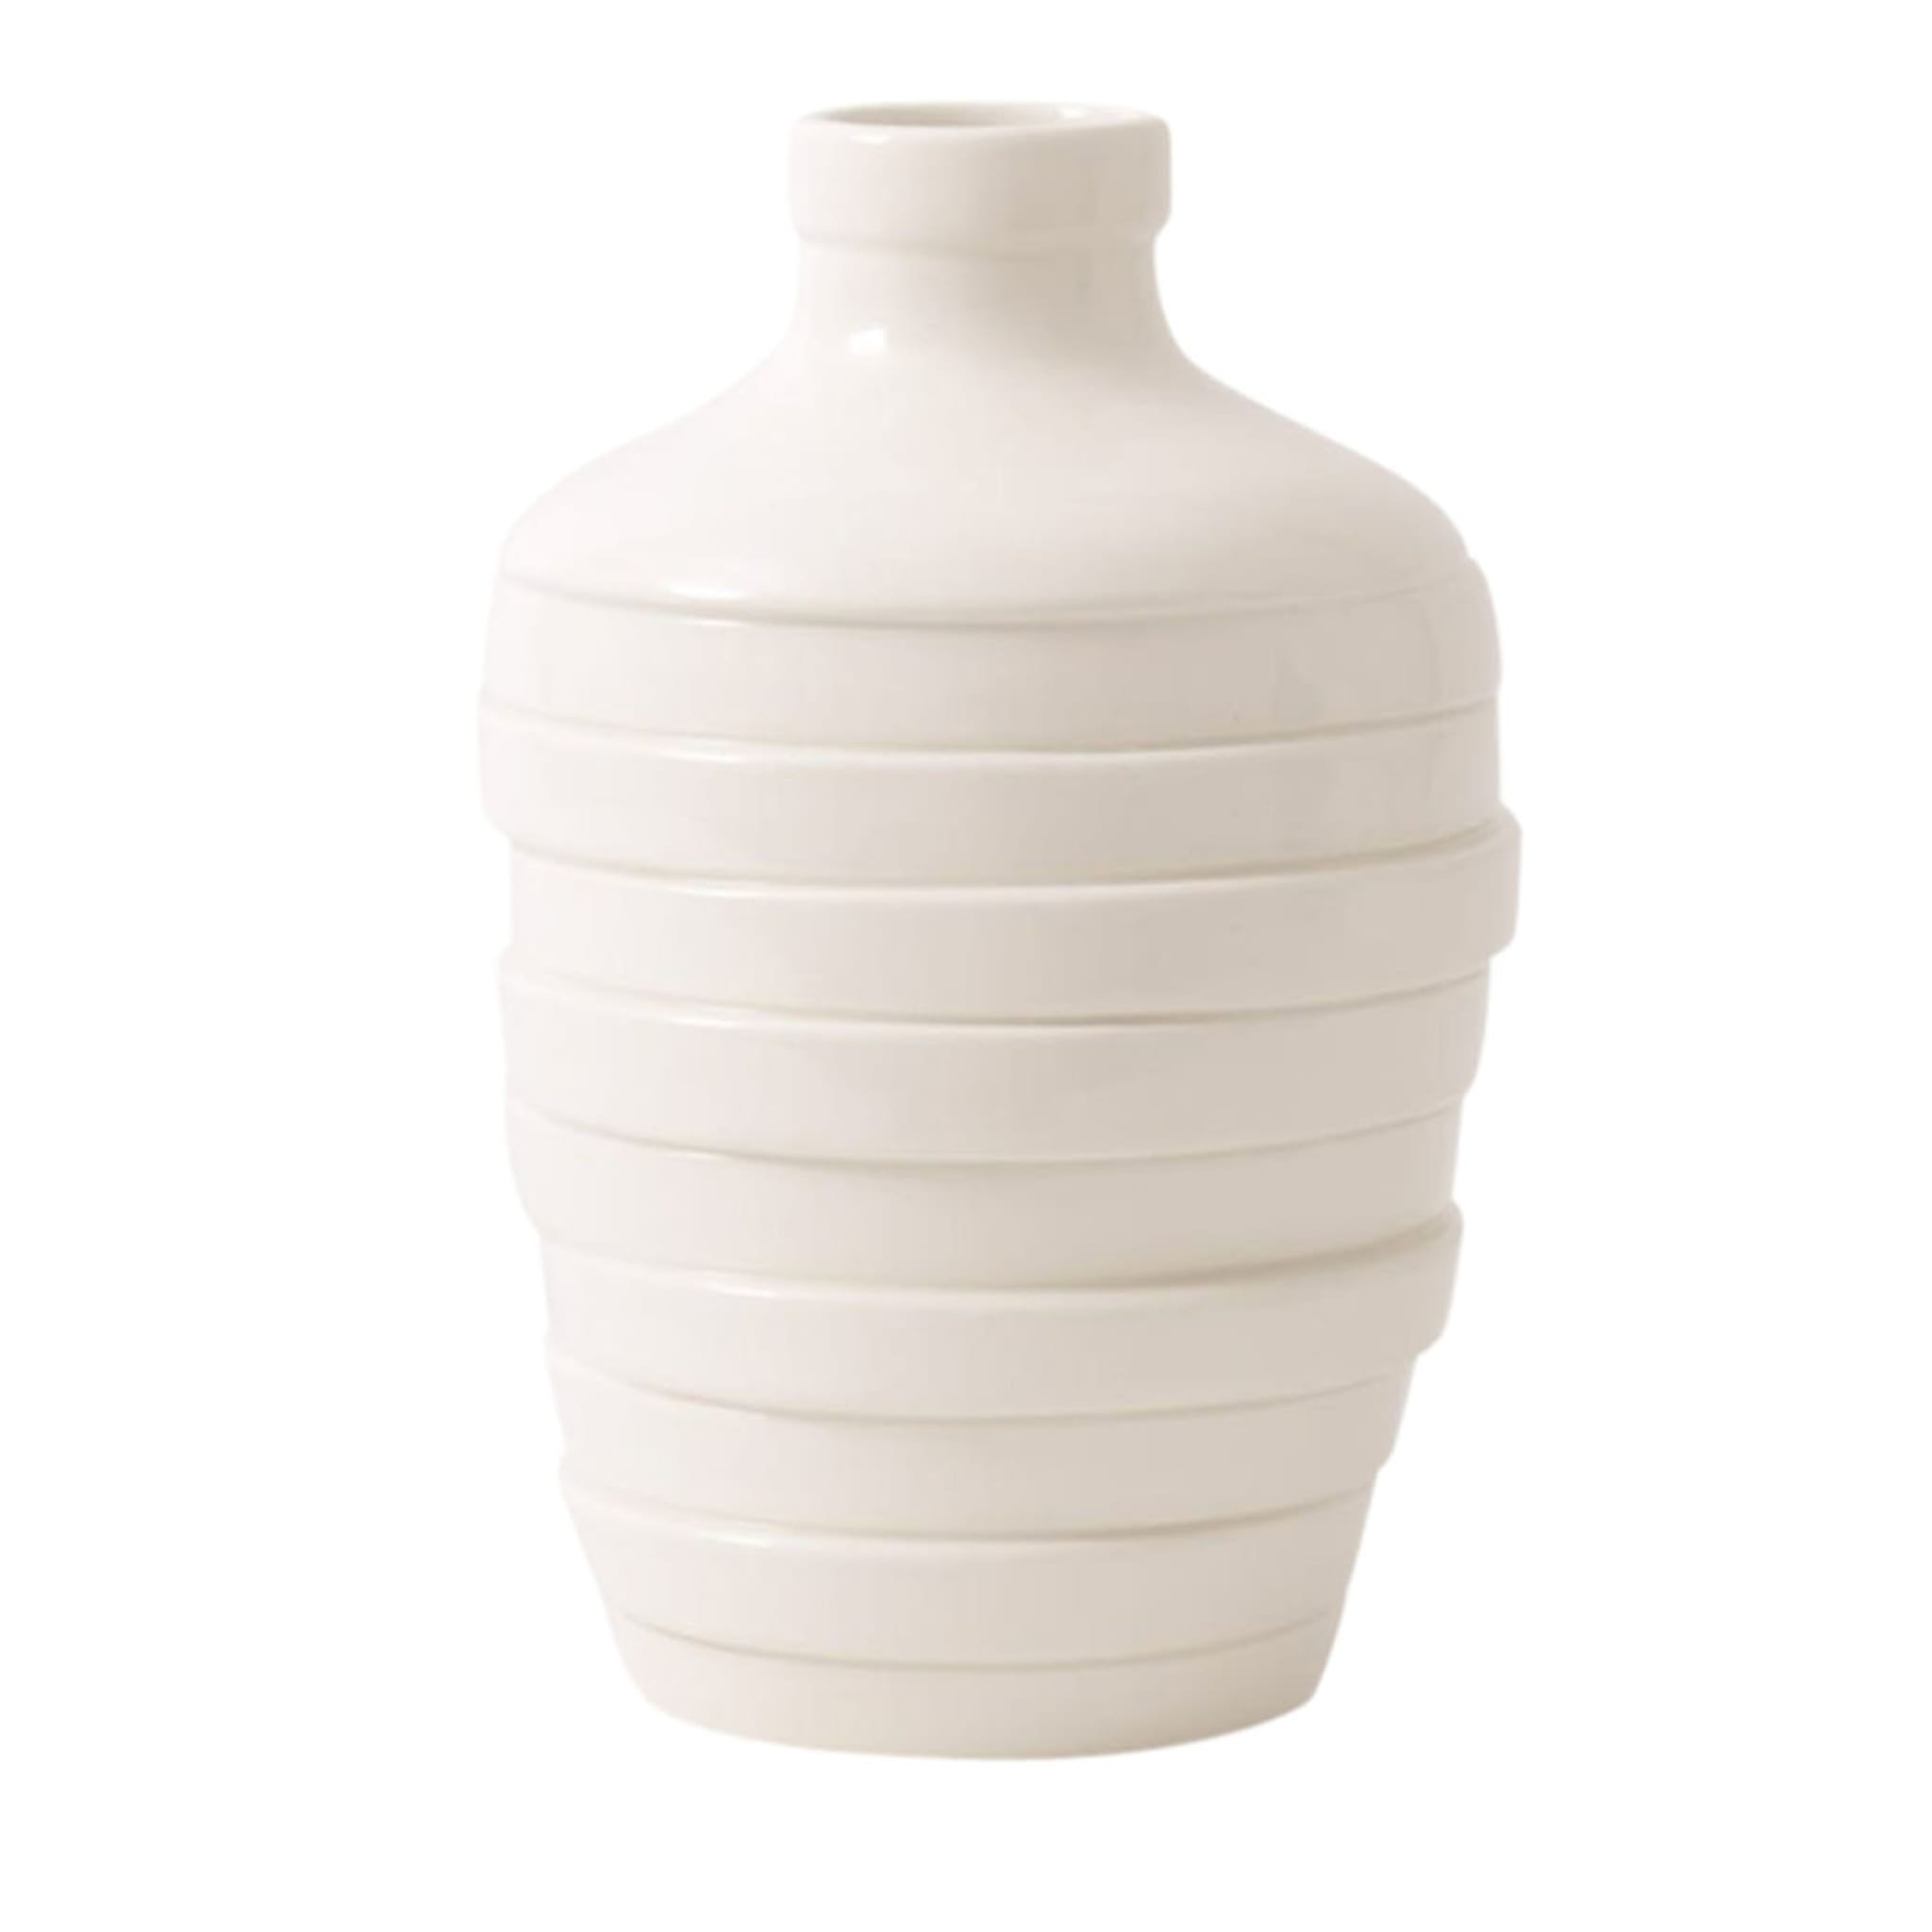 Gioia Kleine weiße Vase - Hauptansicht